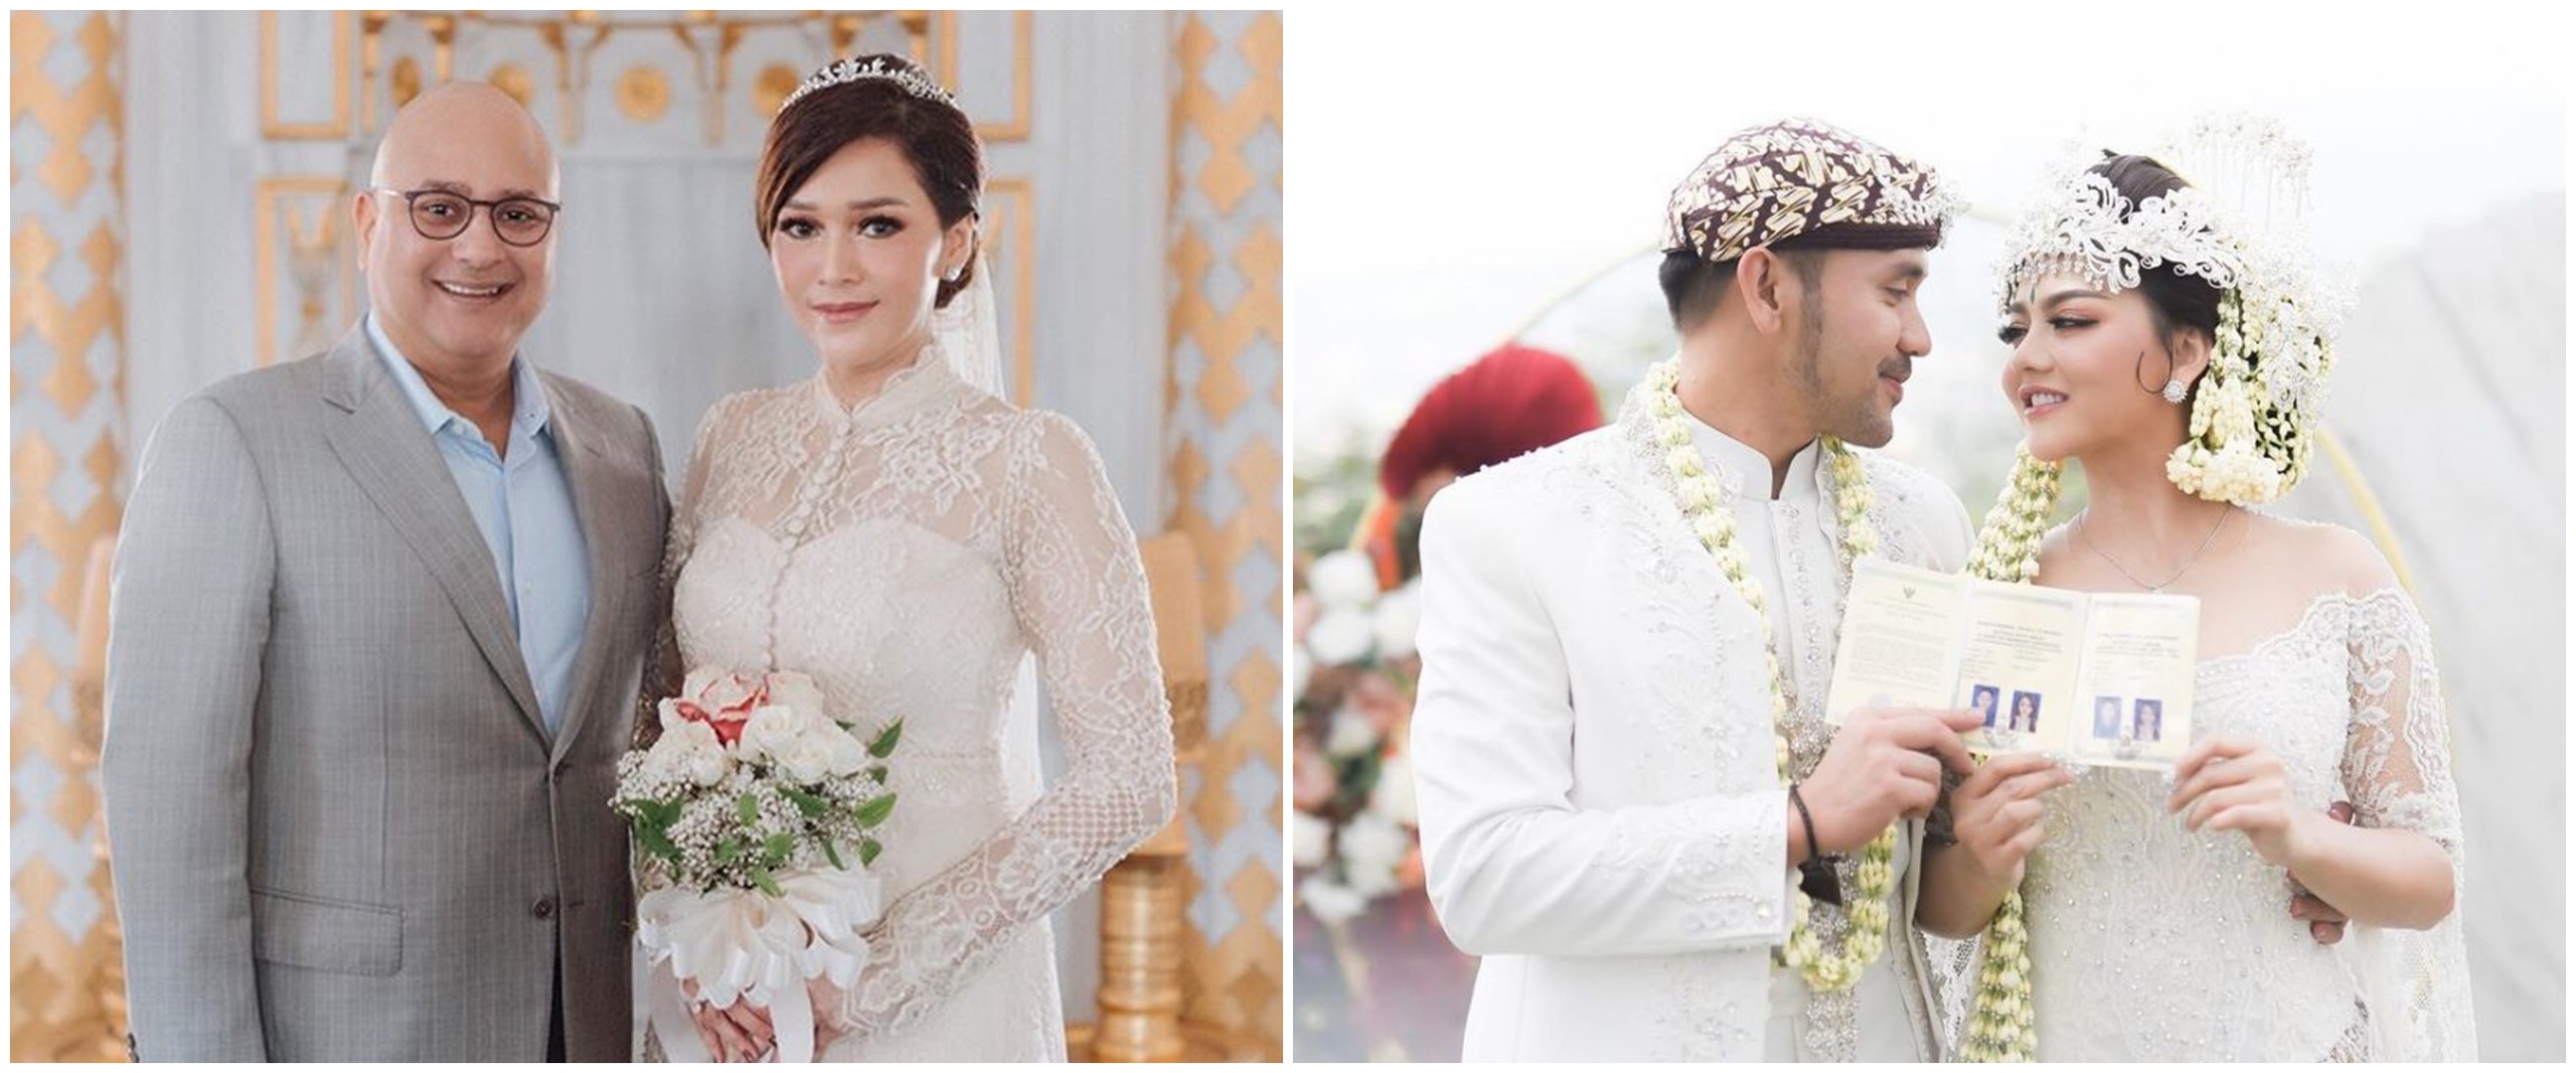 Potret pernikahan kedua 9 penyanyi wanita Tanah Air, BCL tampil anggun dalam balutan kebaya putih